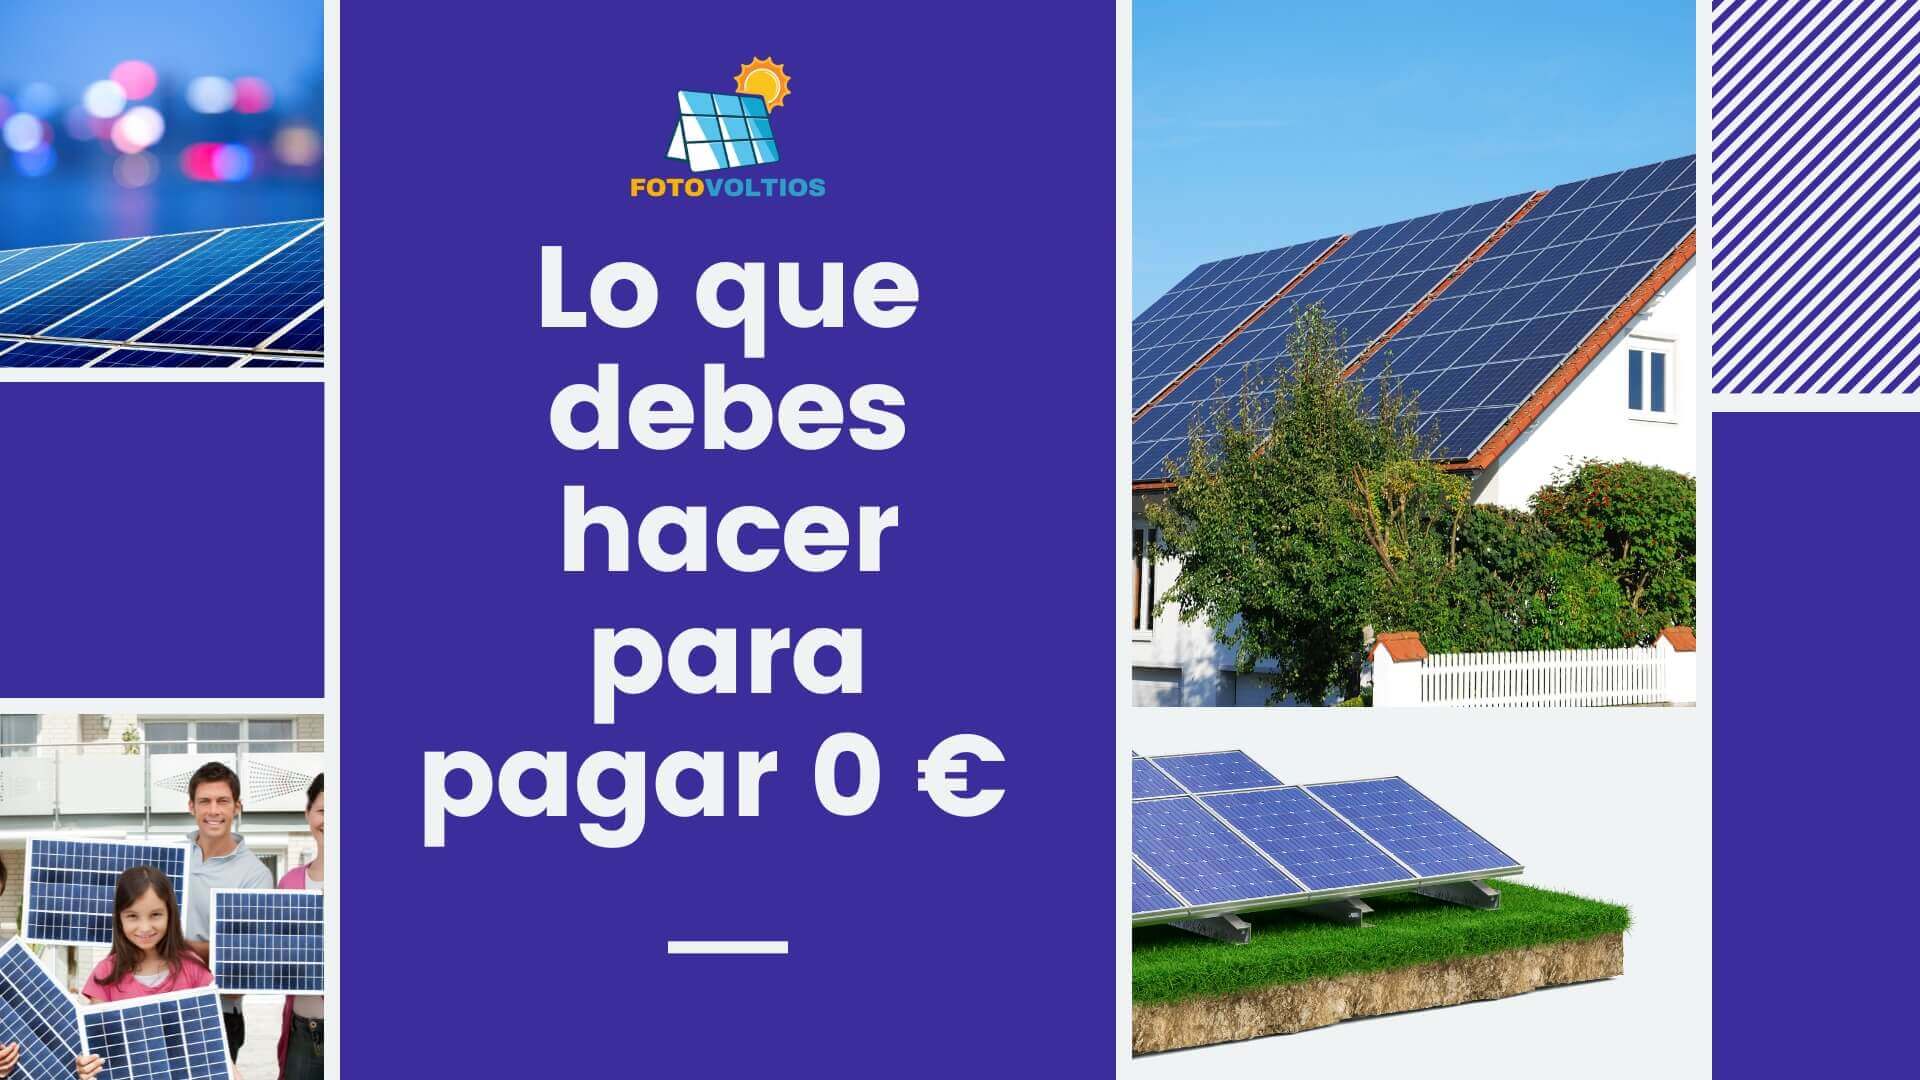 Lo que debes hacer para pagar 0€ si tienes una instalación de autoconsumo fotovoltaico